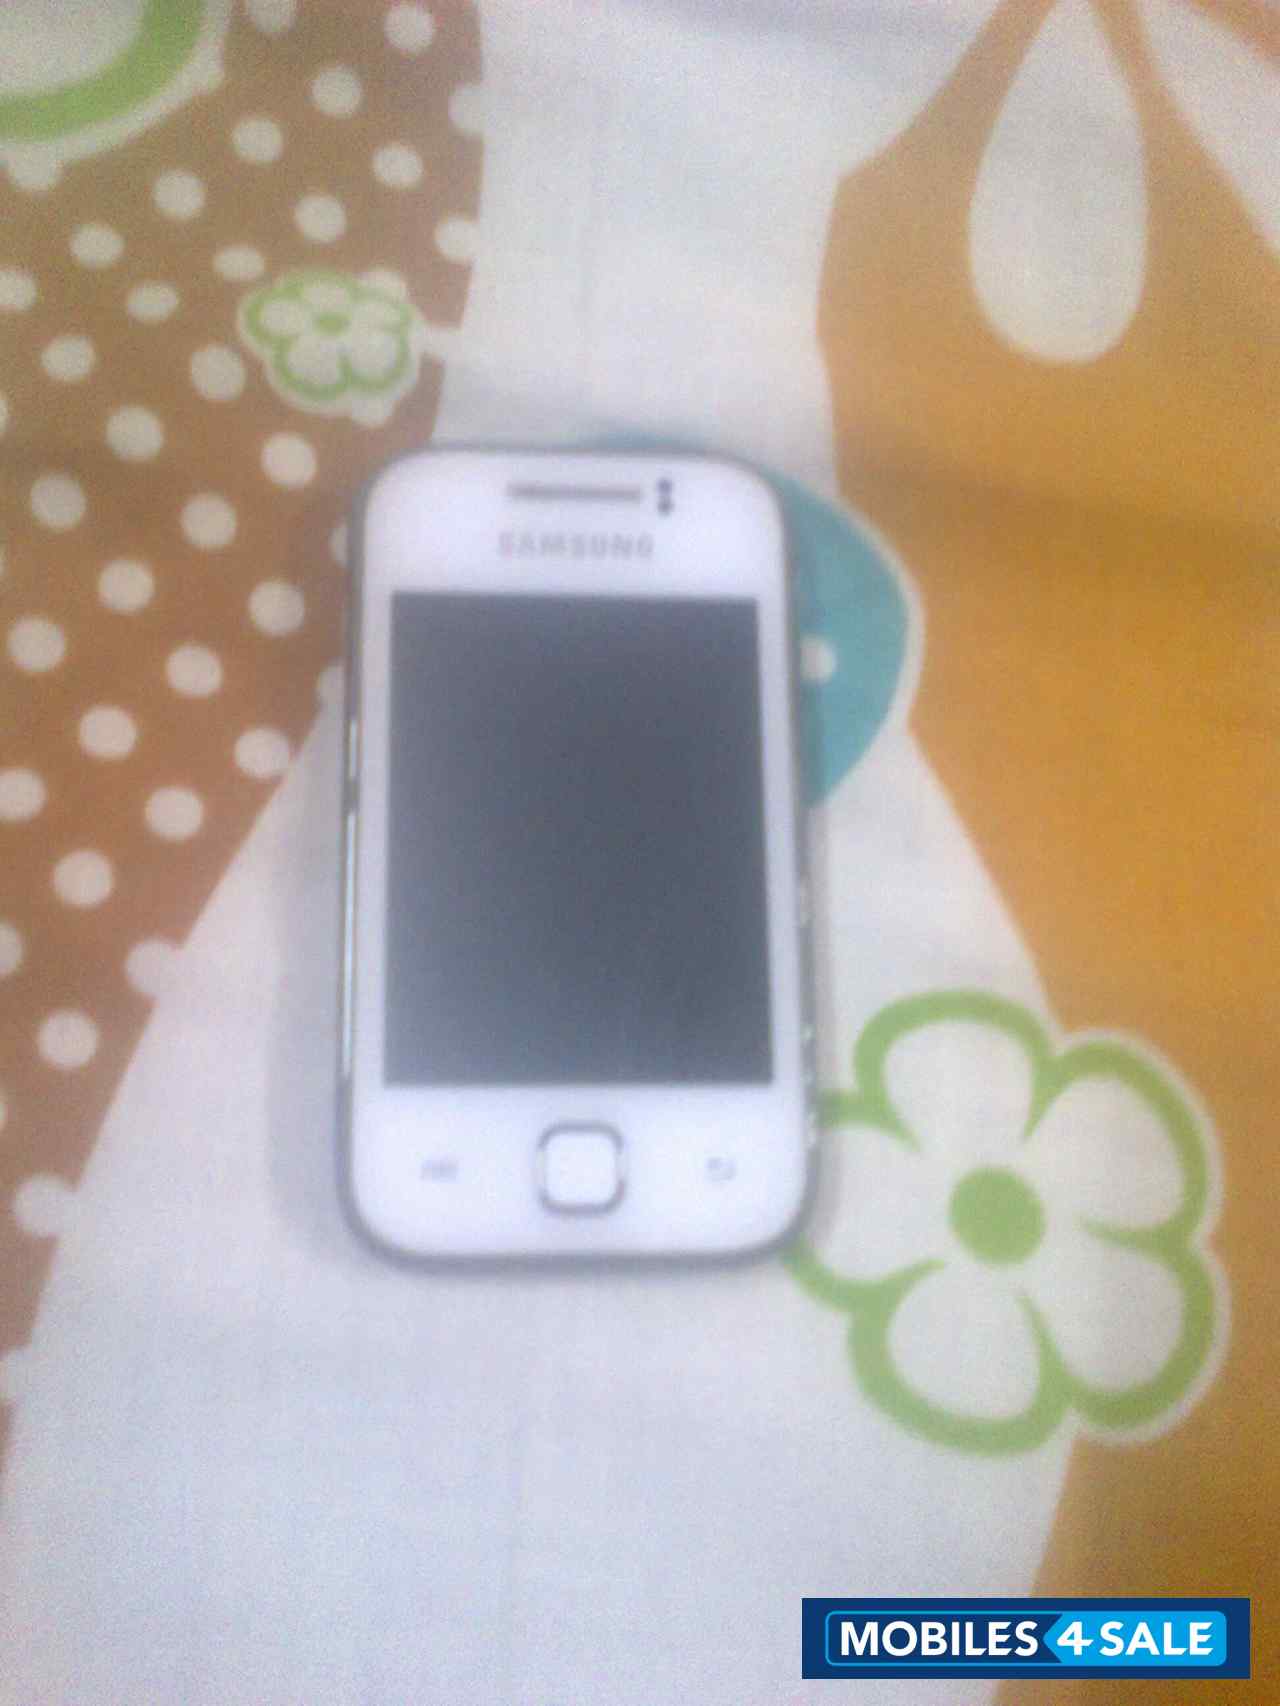 White Samsung Galaxy Y